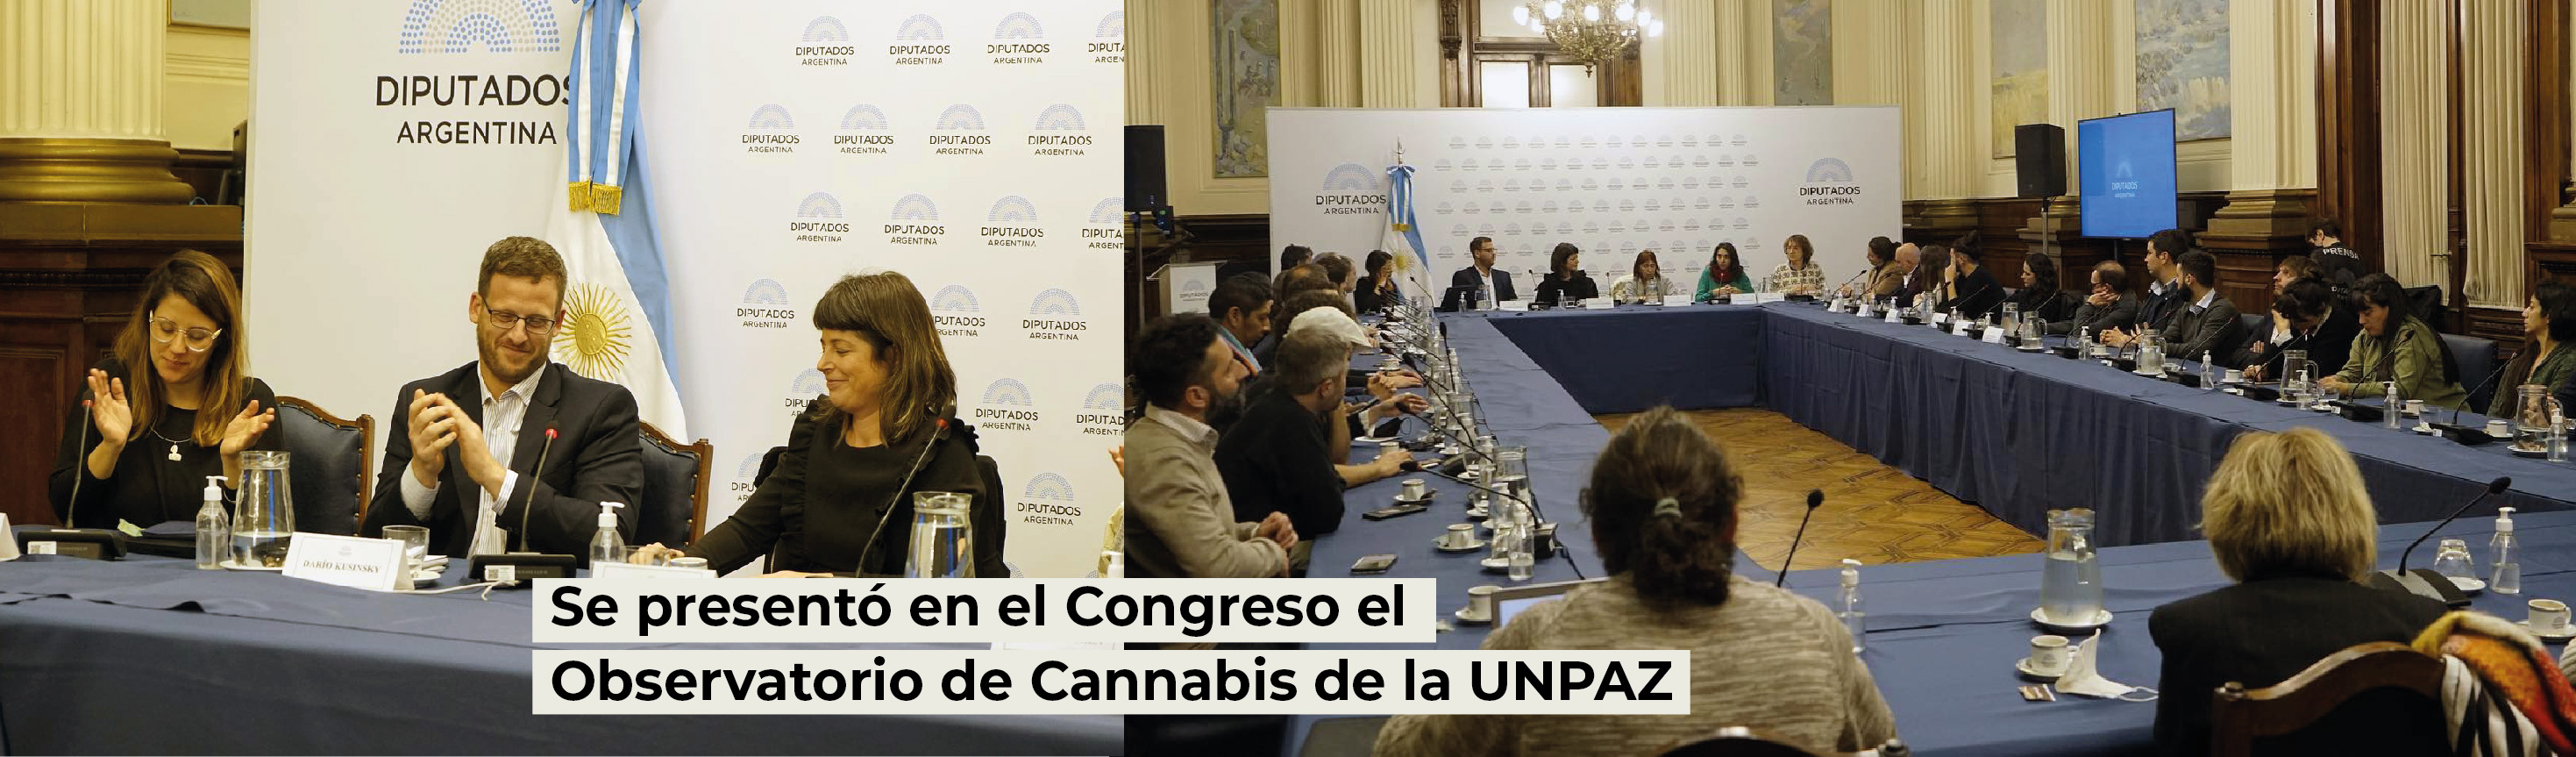 Se presentó en el Congreso el Observatorio de Cannabis de la UNPAZ 